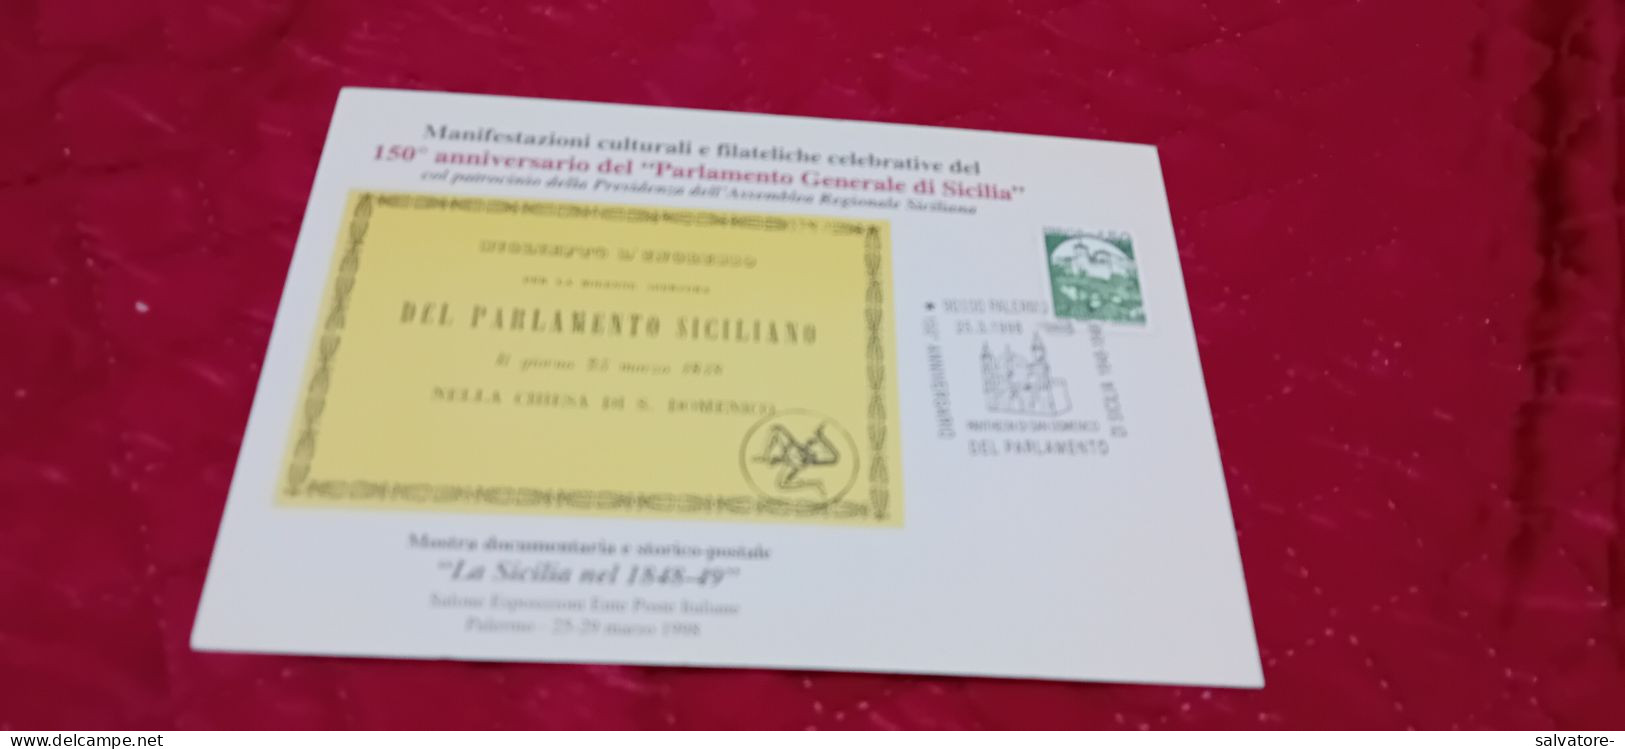 CARTOLINA  MANIFESTAZIONI CULTURALI E FILATELICHE CELEBRATIVE DEL 150 ANN.PARLAMENTO SICILIA- 1998 - Stamps (pictures)